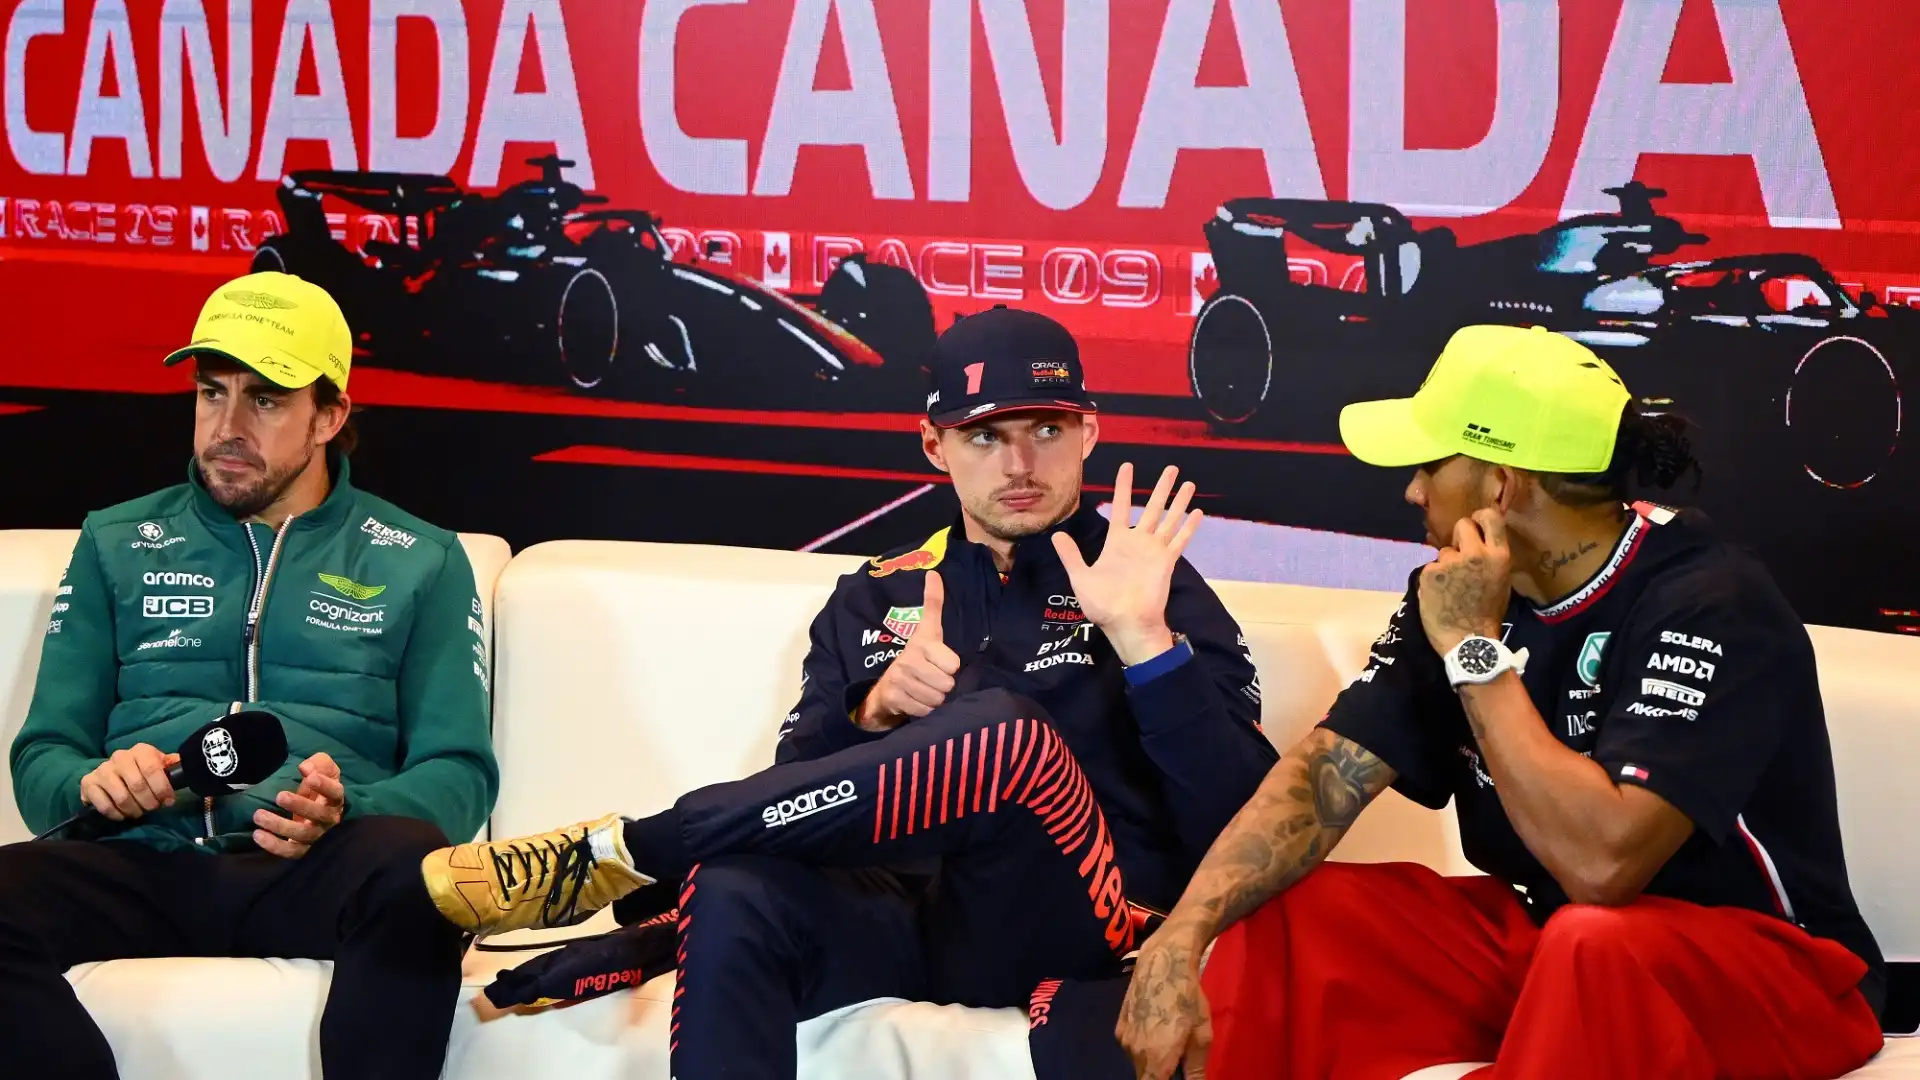 "Hamilton e Verstappen hanno vinto perché si sono ritrovati in team vincenti a causa dei cambi di regolamento"